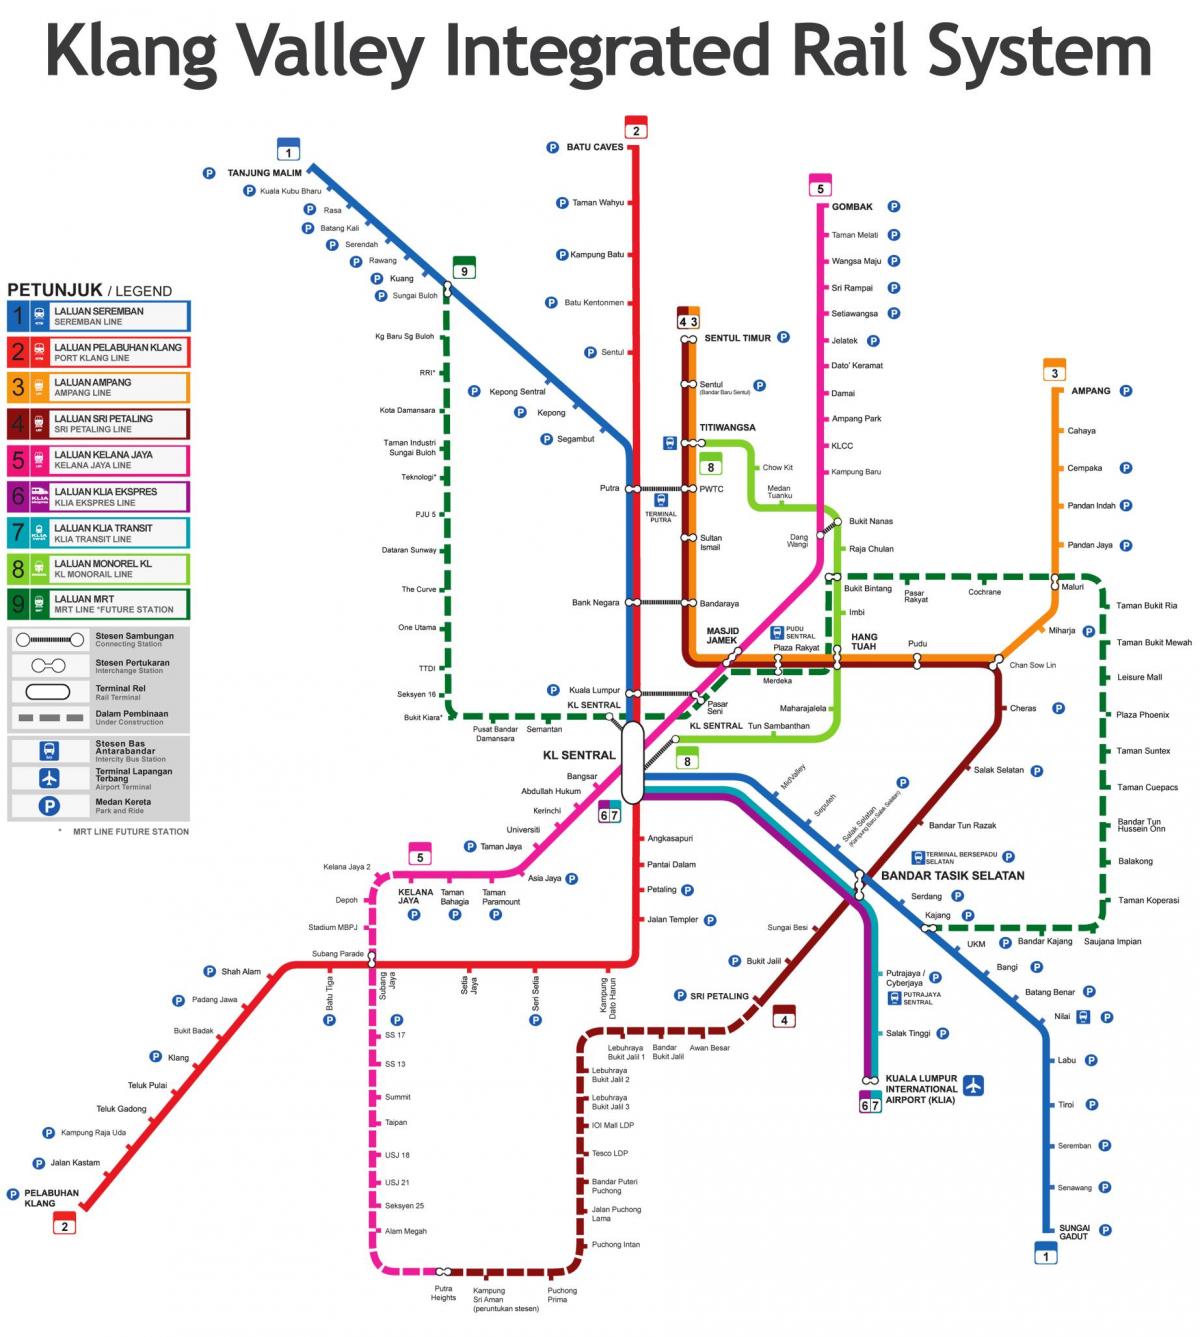 ملائیشیا ٹرین اسٹیشن کا نقشہ